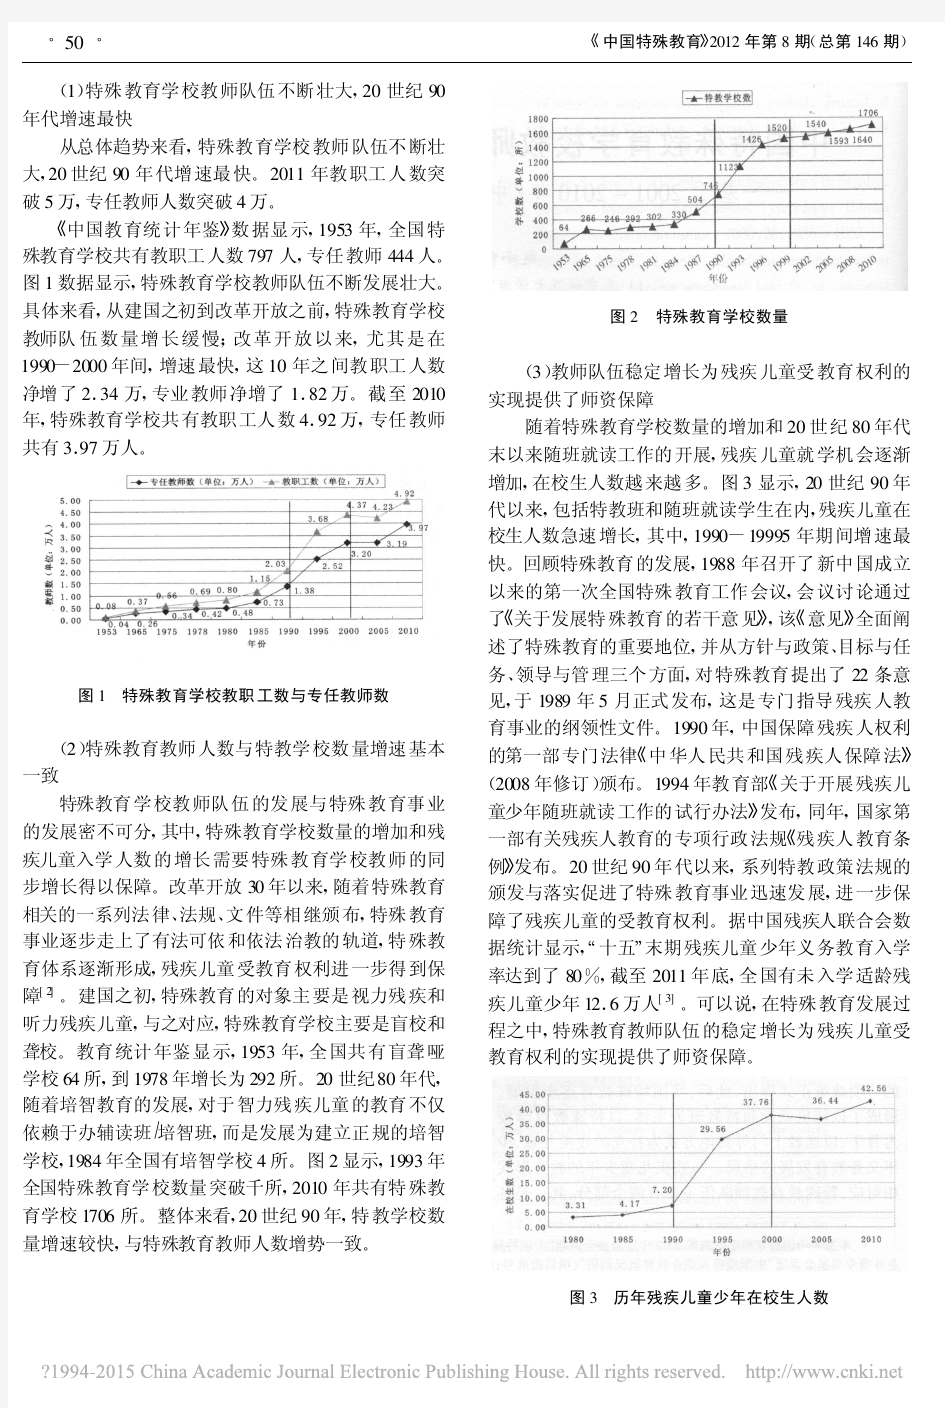 中国特殊教育学校教师队伍状况及地区比较